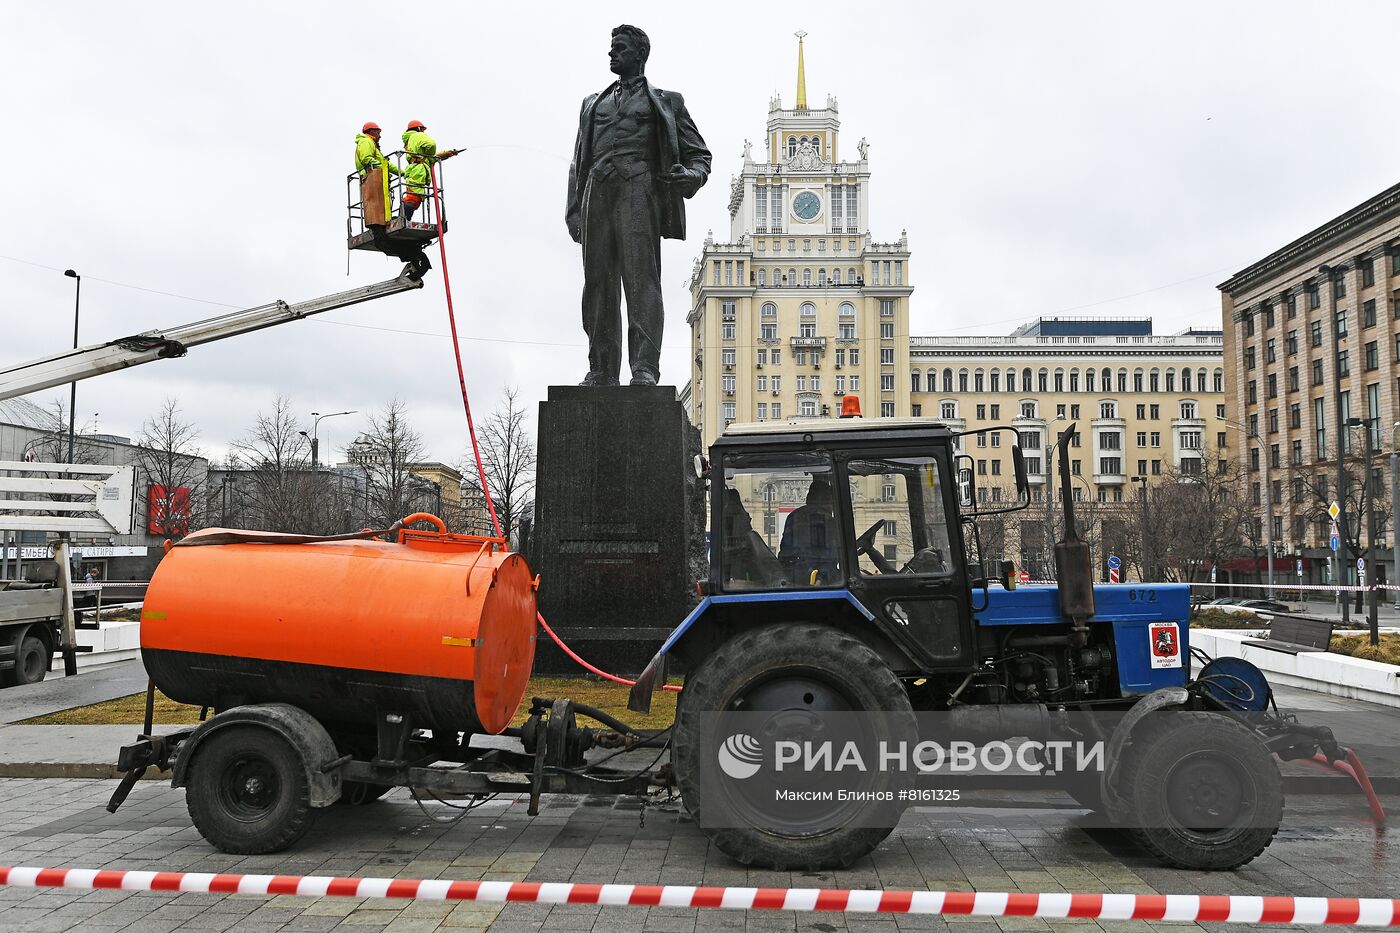 Промывка памятника Владимиру Маяковскому